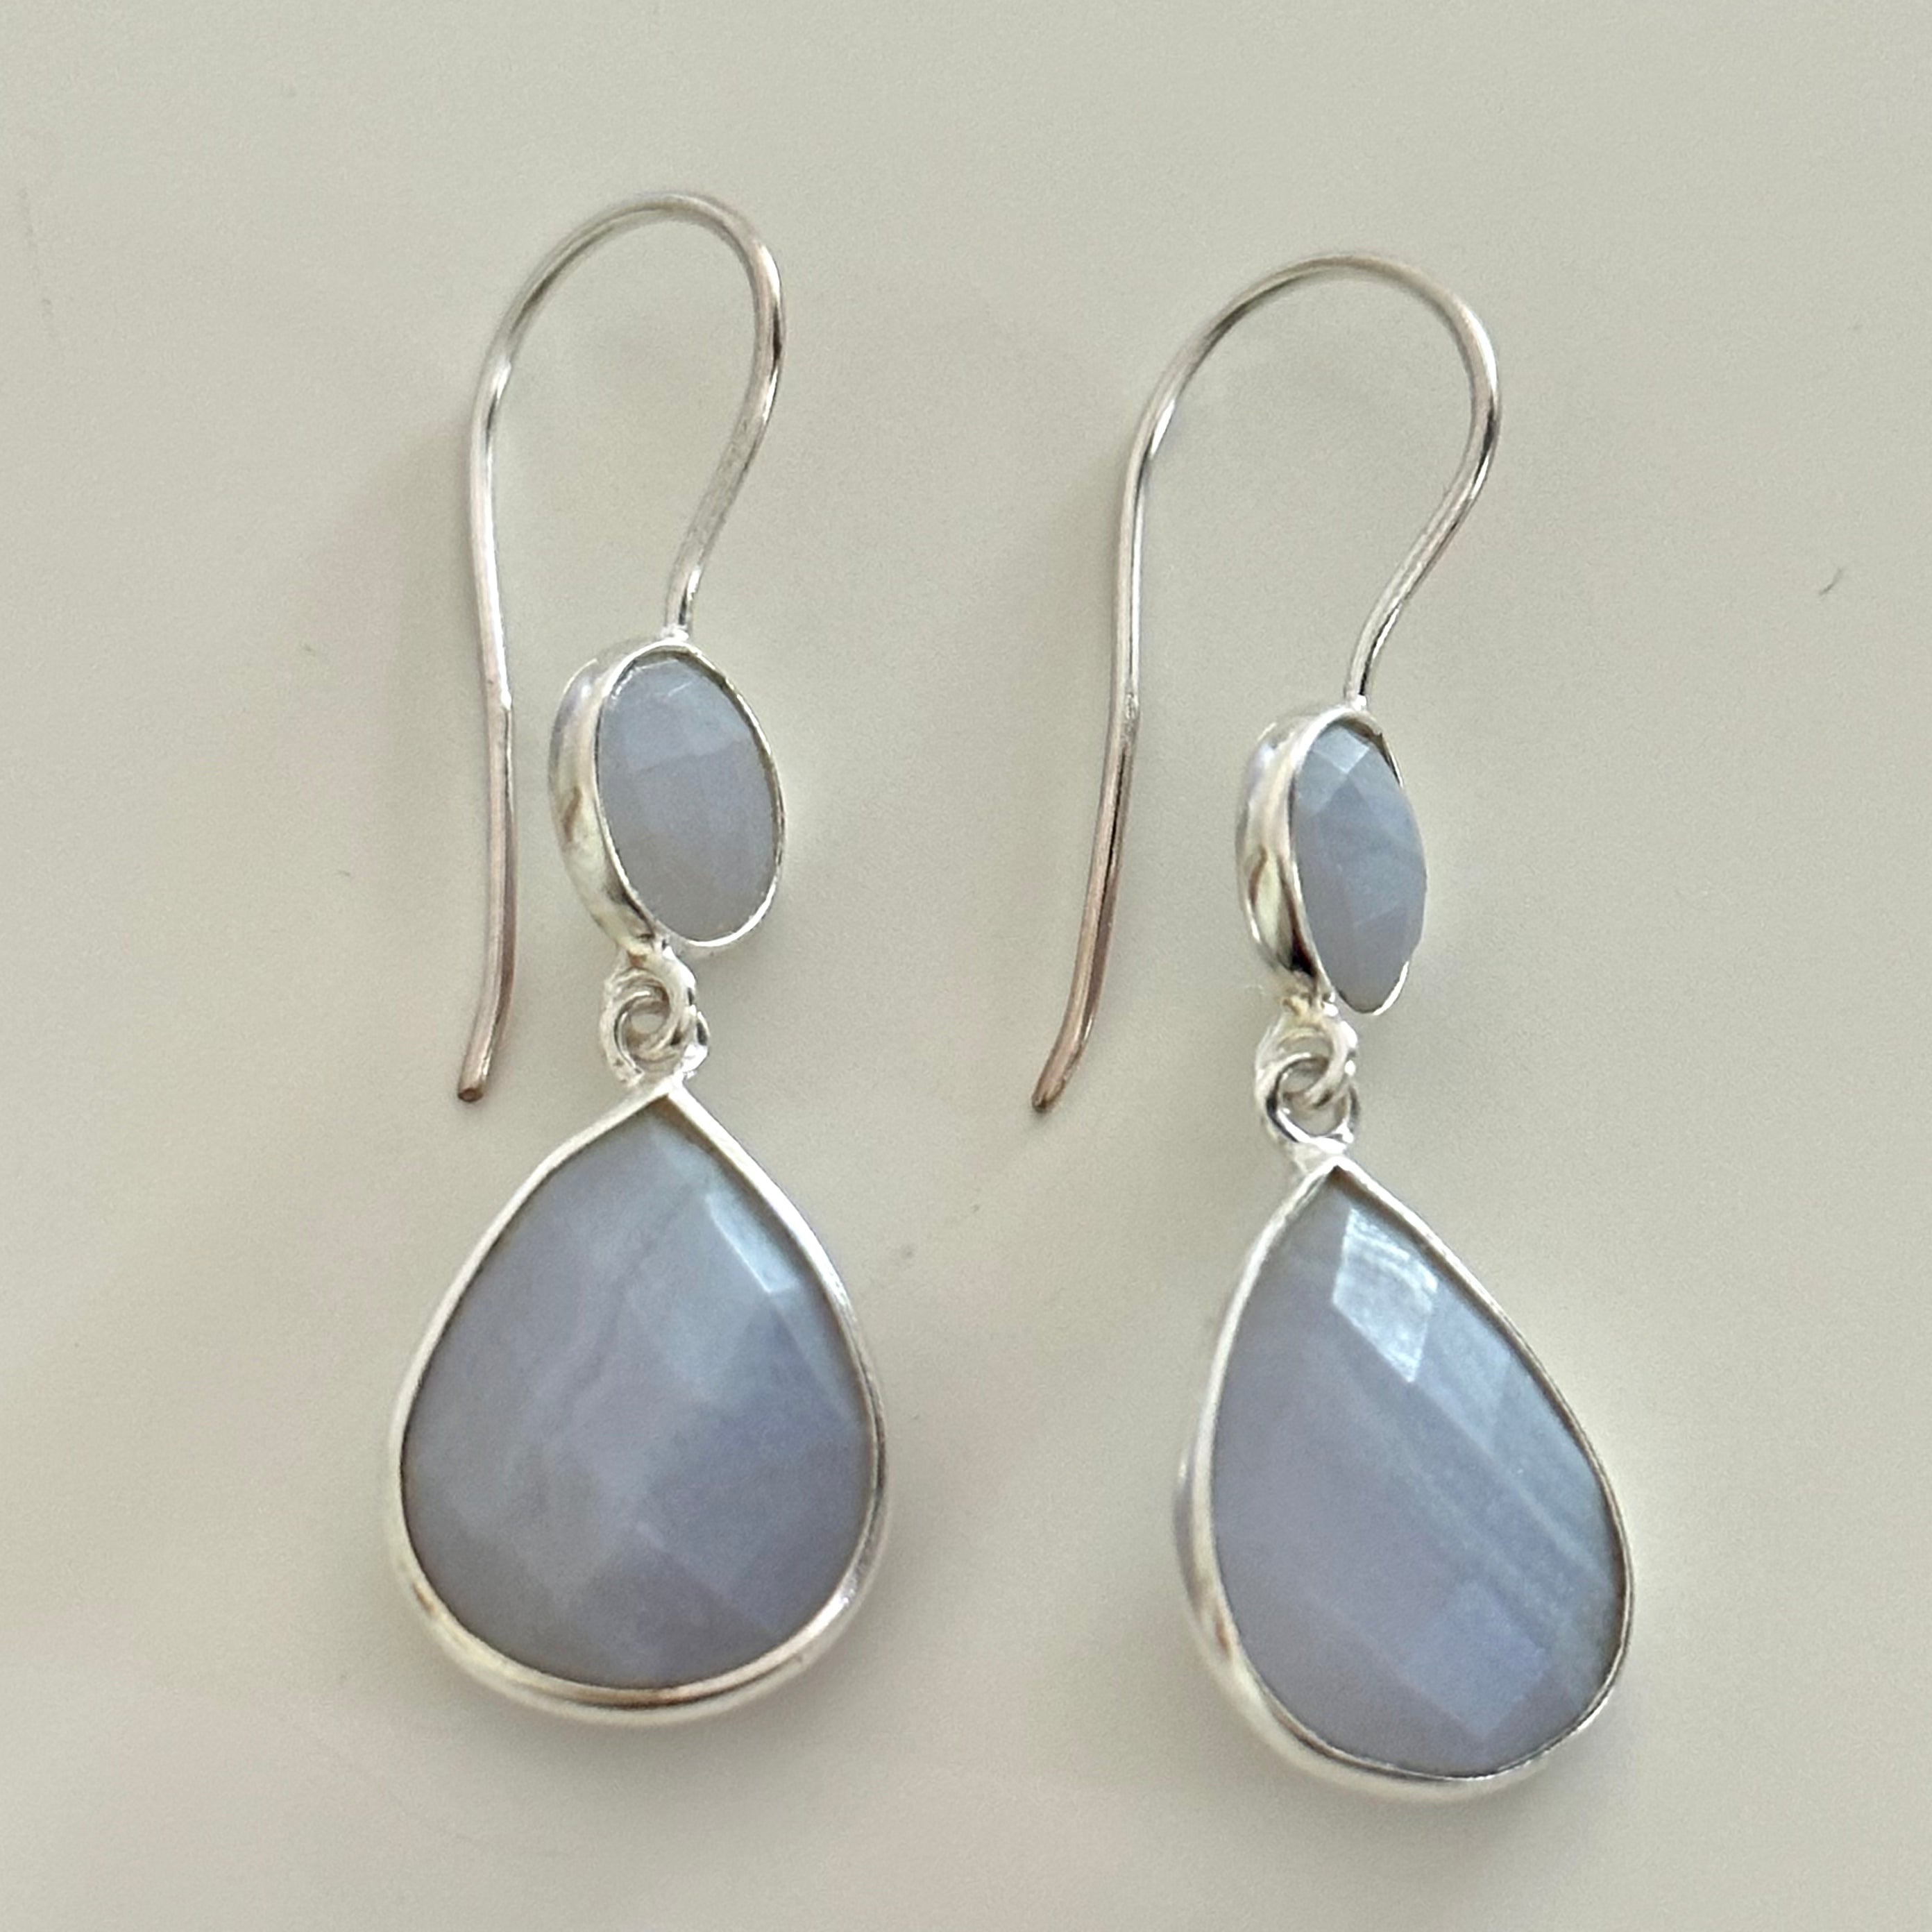 Blue Laced Agate Gemstone Two Stone Earrings in Sterling Silver - Teardrop